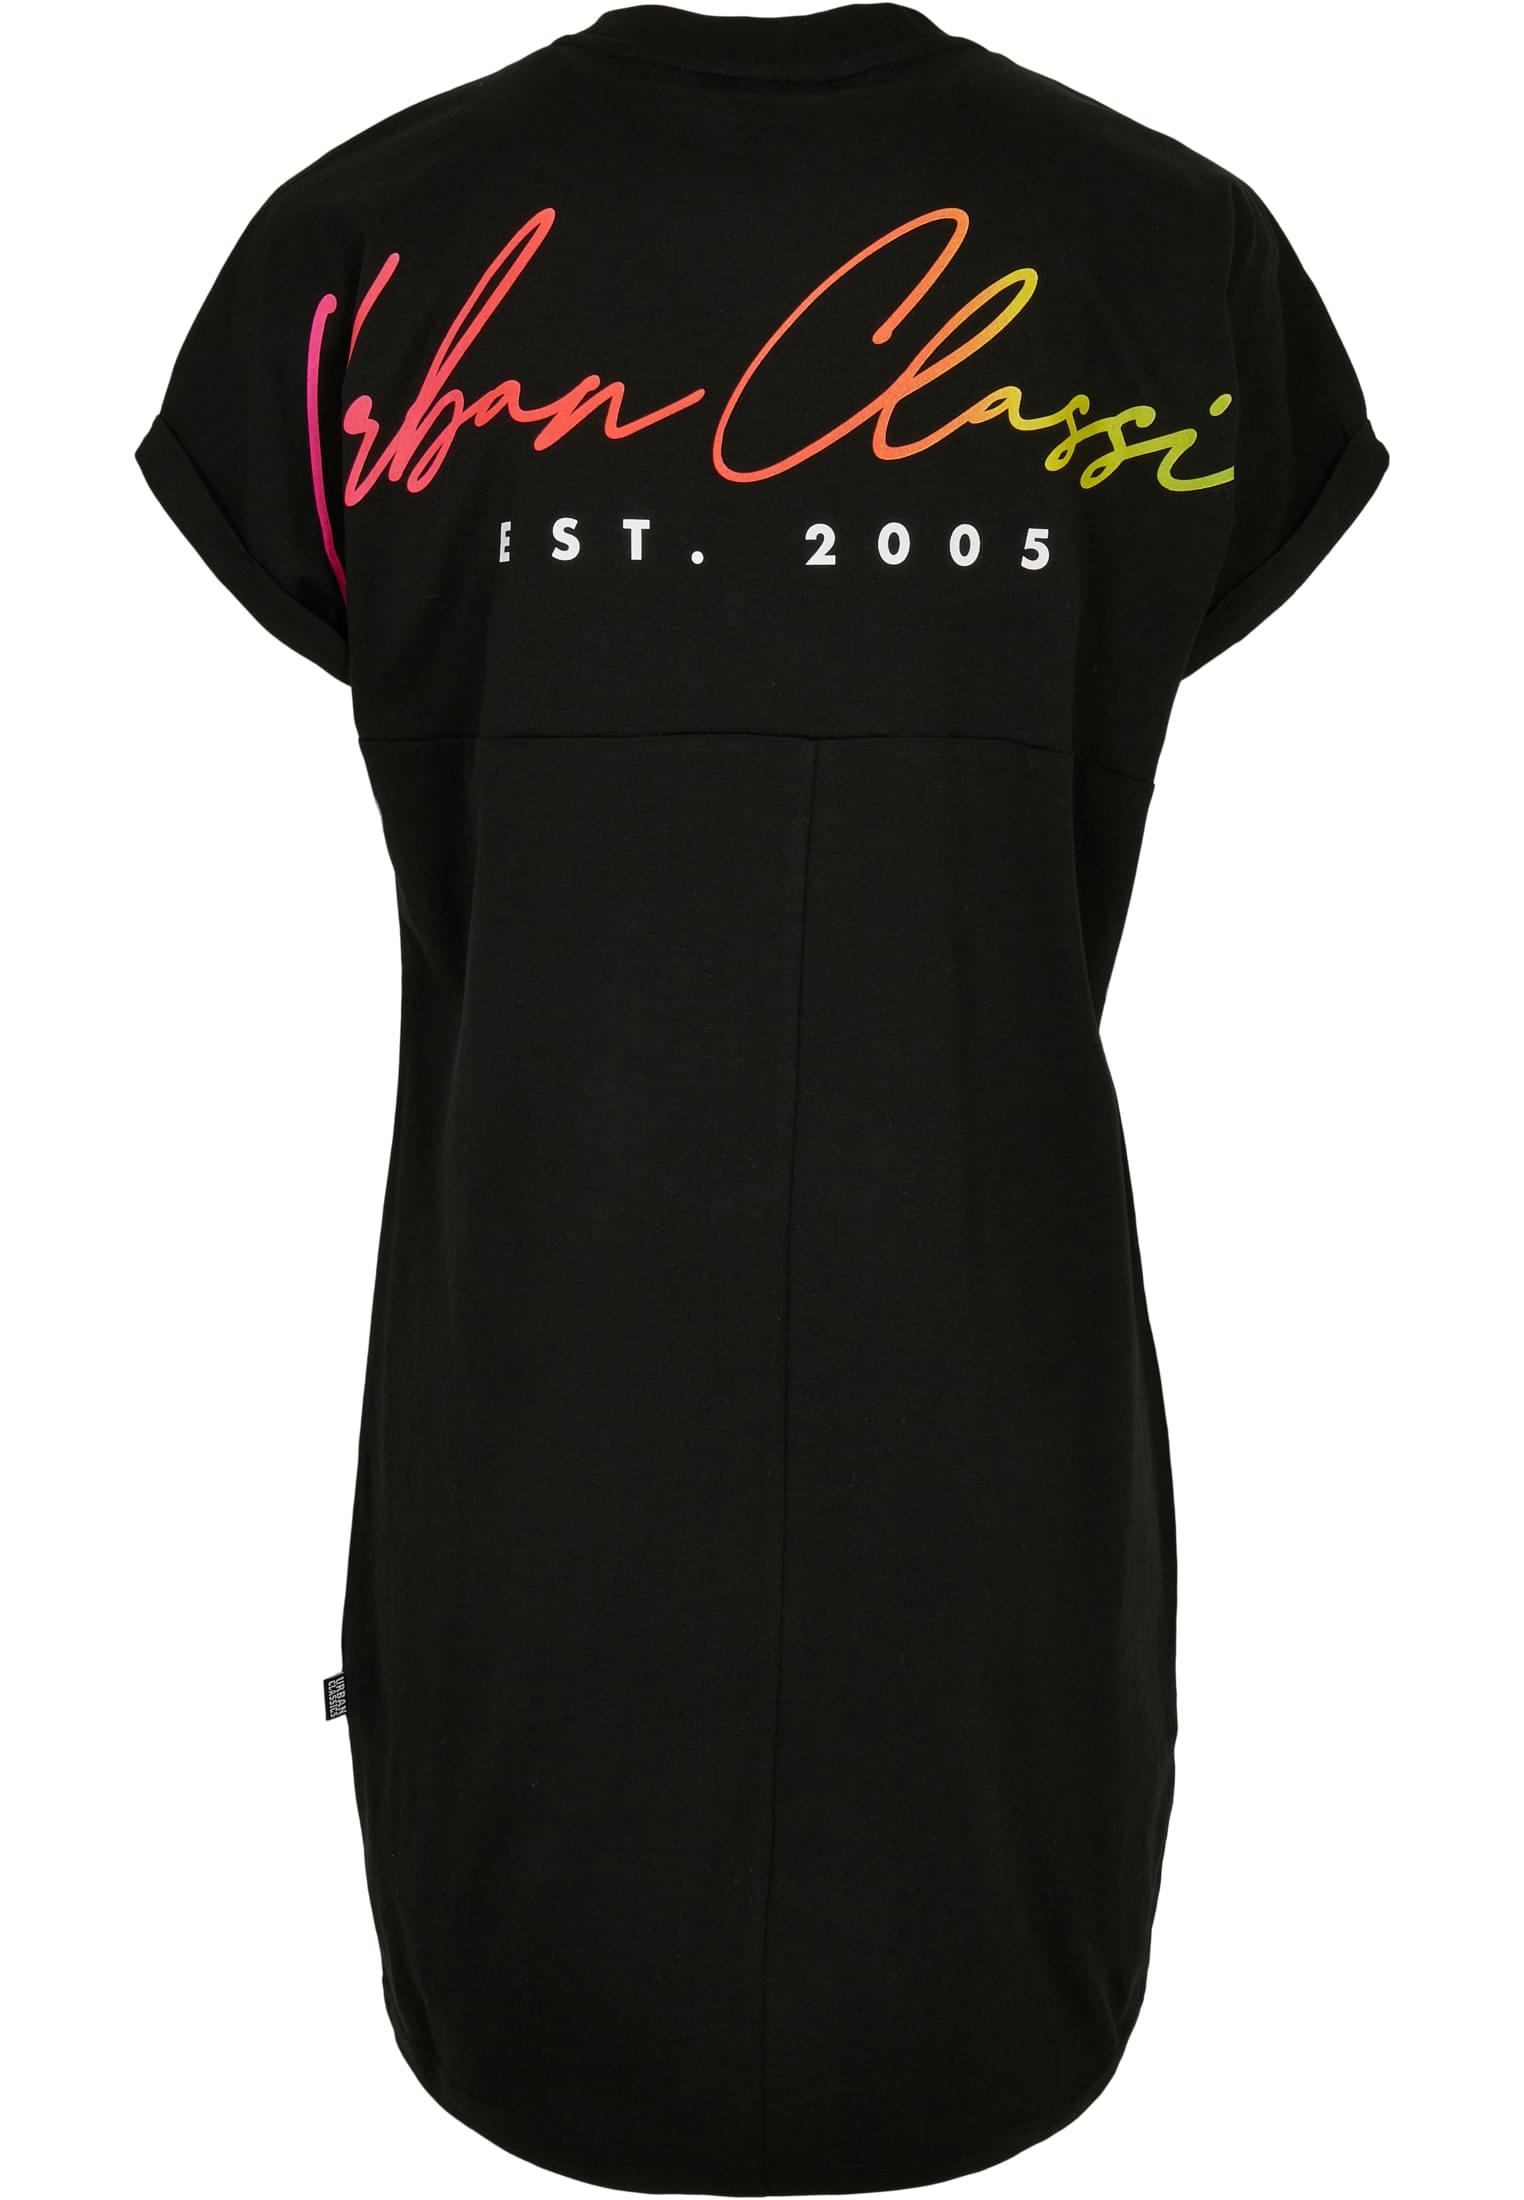 Frauen Ladies Rainbow Tee Dress in Farbe black